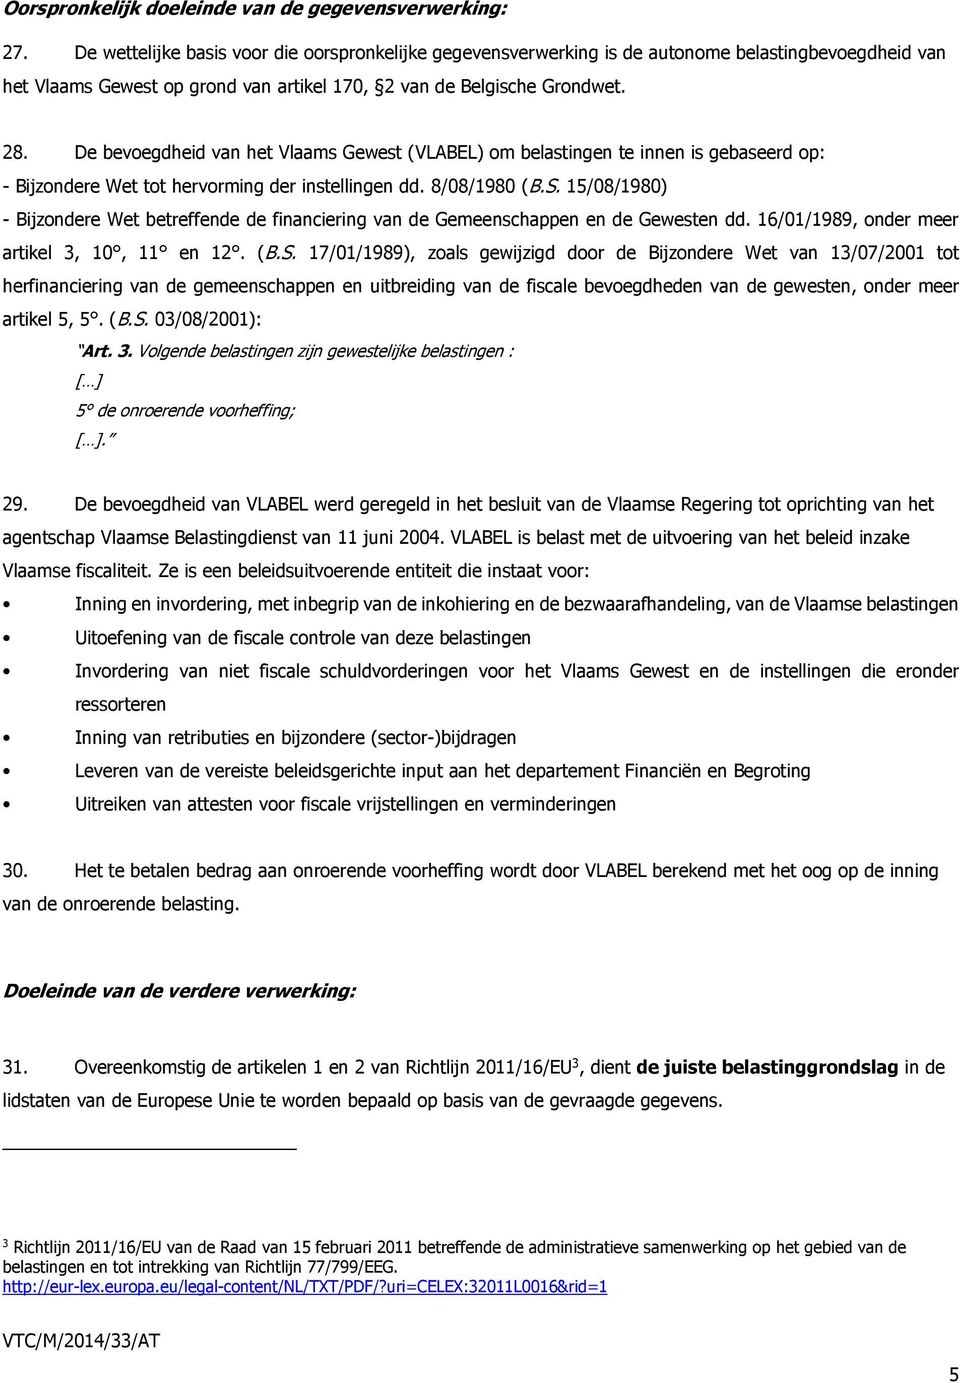 De bevoegdheid van het Vlaams Gewest (VLABEL) om belastingen te innen is gebaseerd op: - Bijzondere Wet tot hervorming der instellingen dd. 8/08/1980 (B.S.